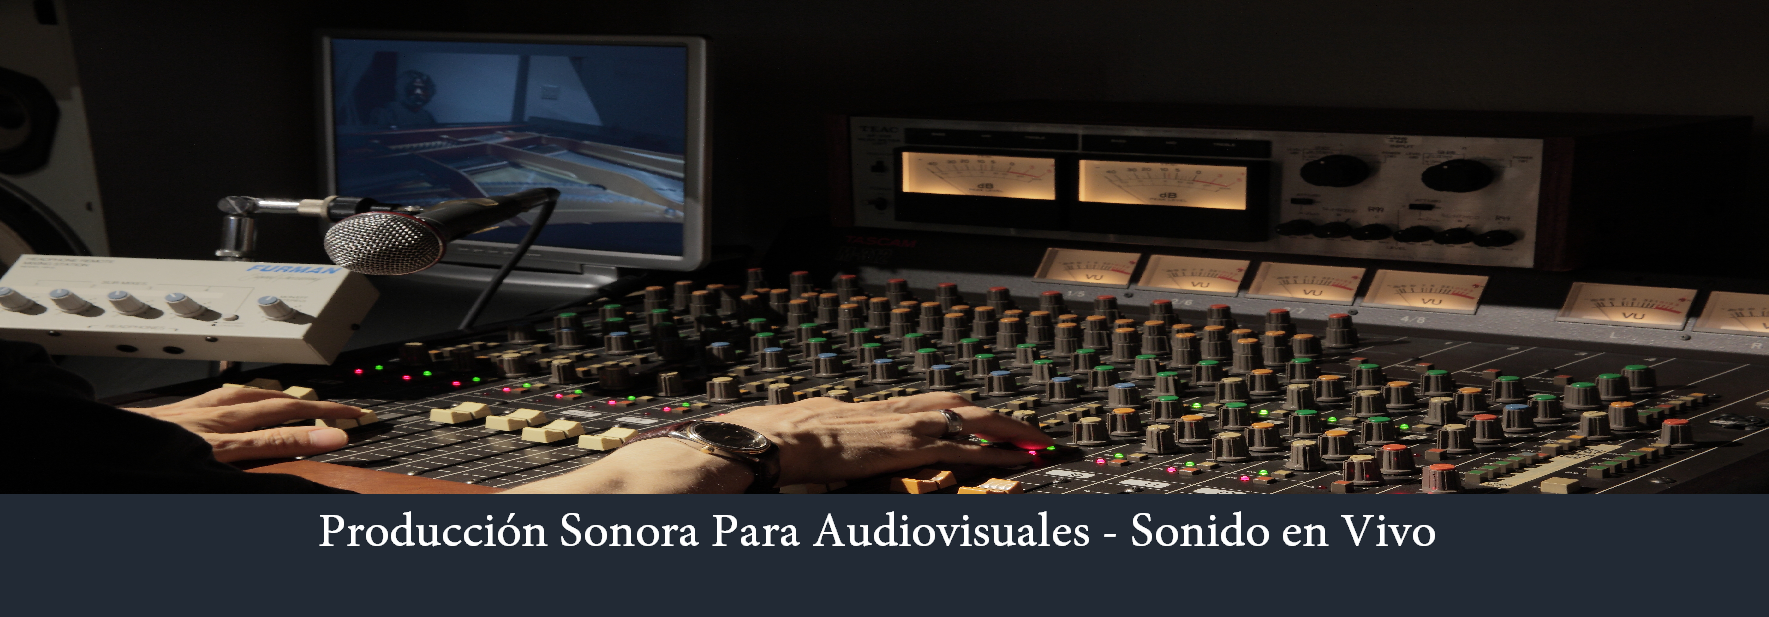 Producción Sonora  y sonido en vivo